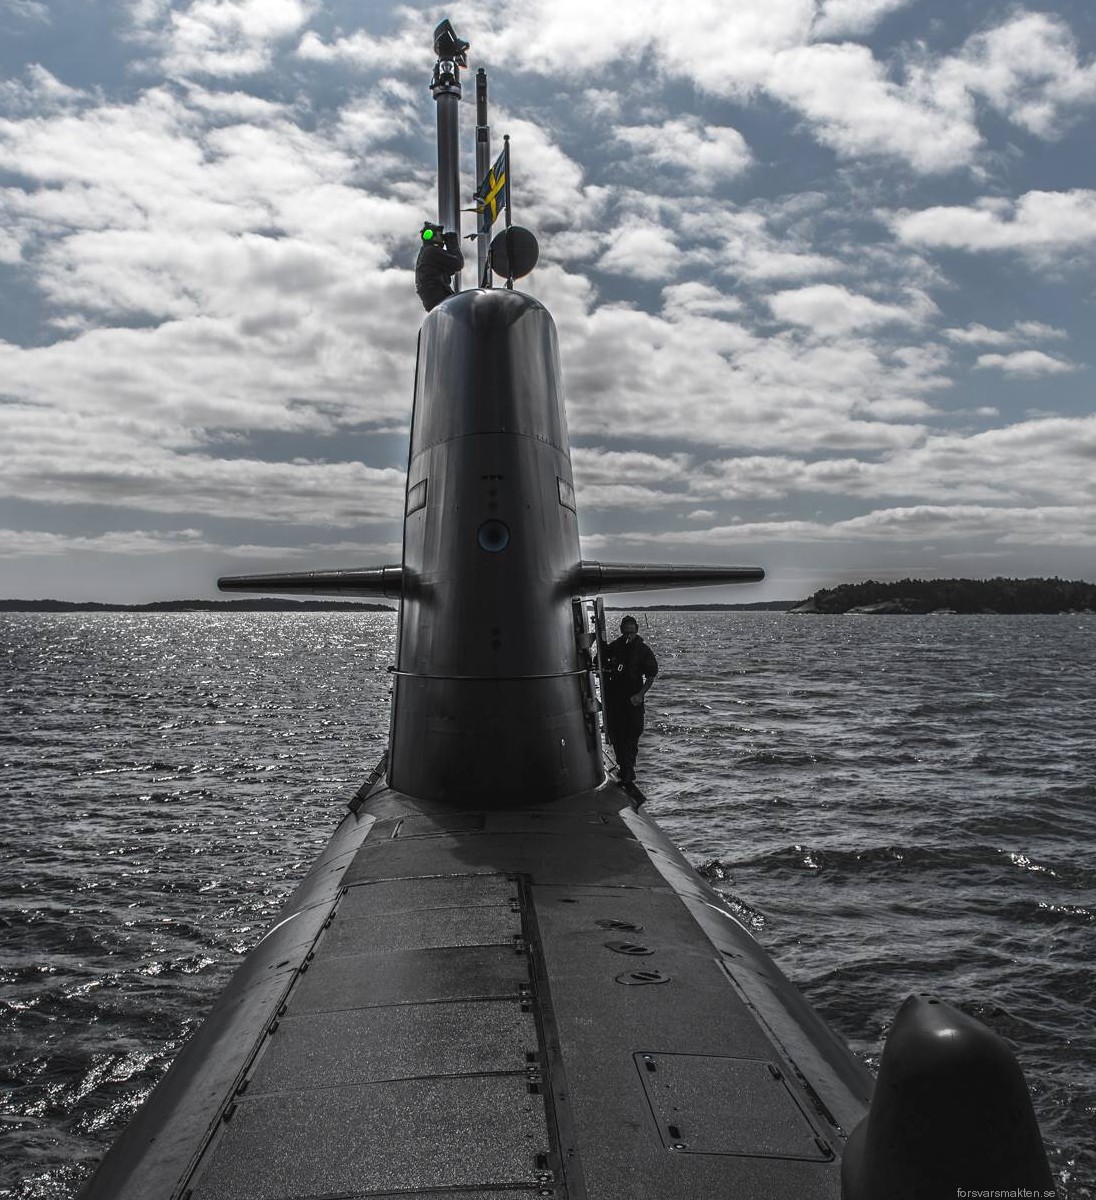 gotland class a19 submarine ssk aip hswms hms halland uppland swedish navy svenska marinen försvarsmakten 03